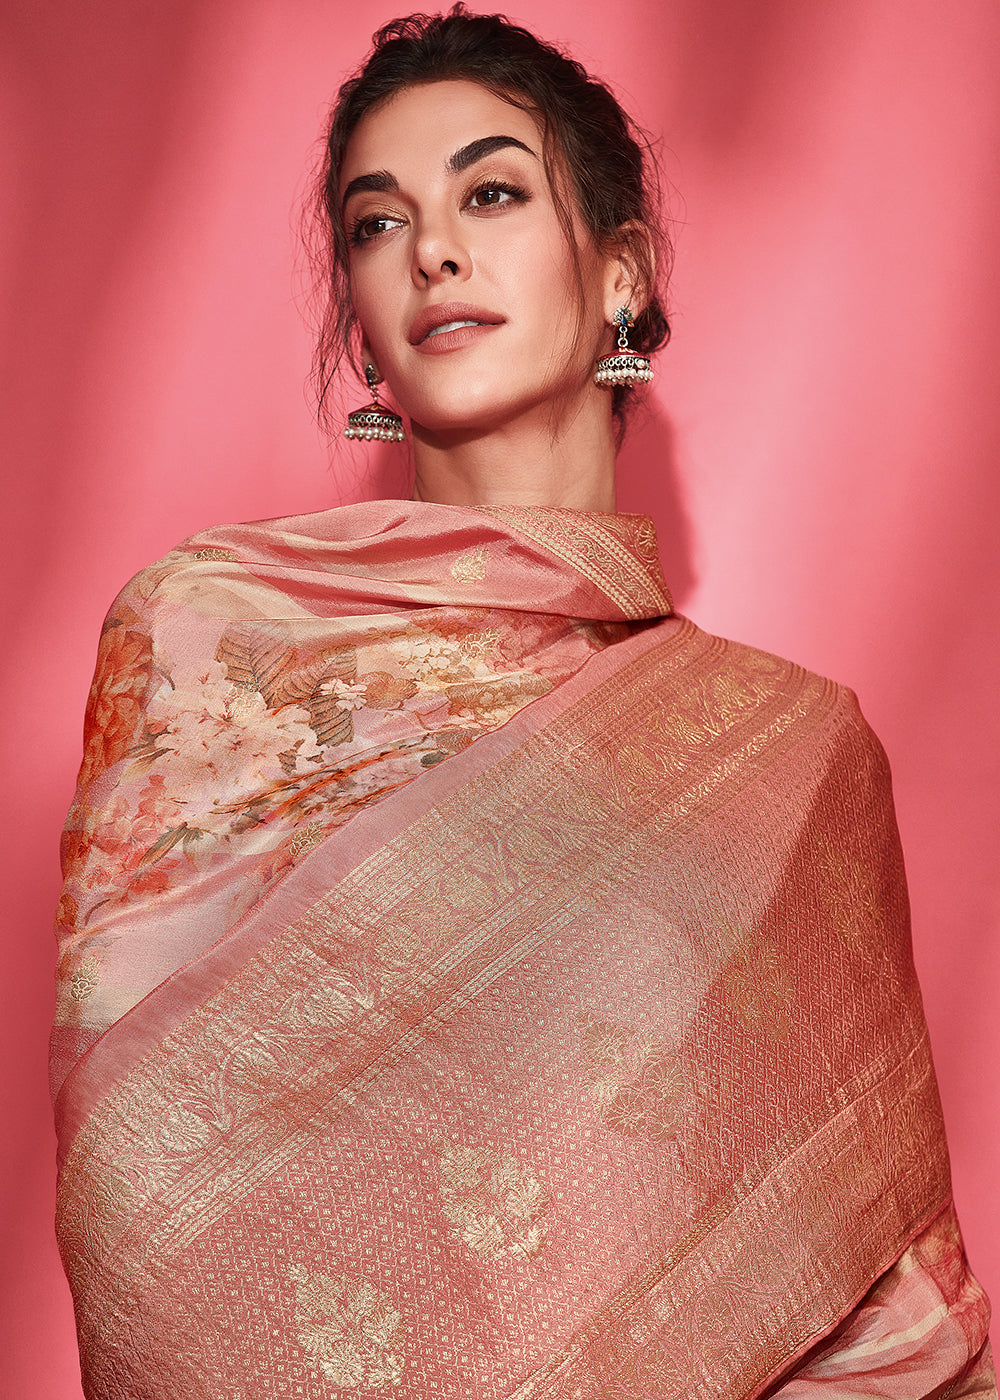 Shades Of Pink Floral Printed Woven Viscose Silk Saree